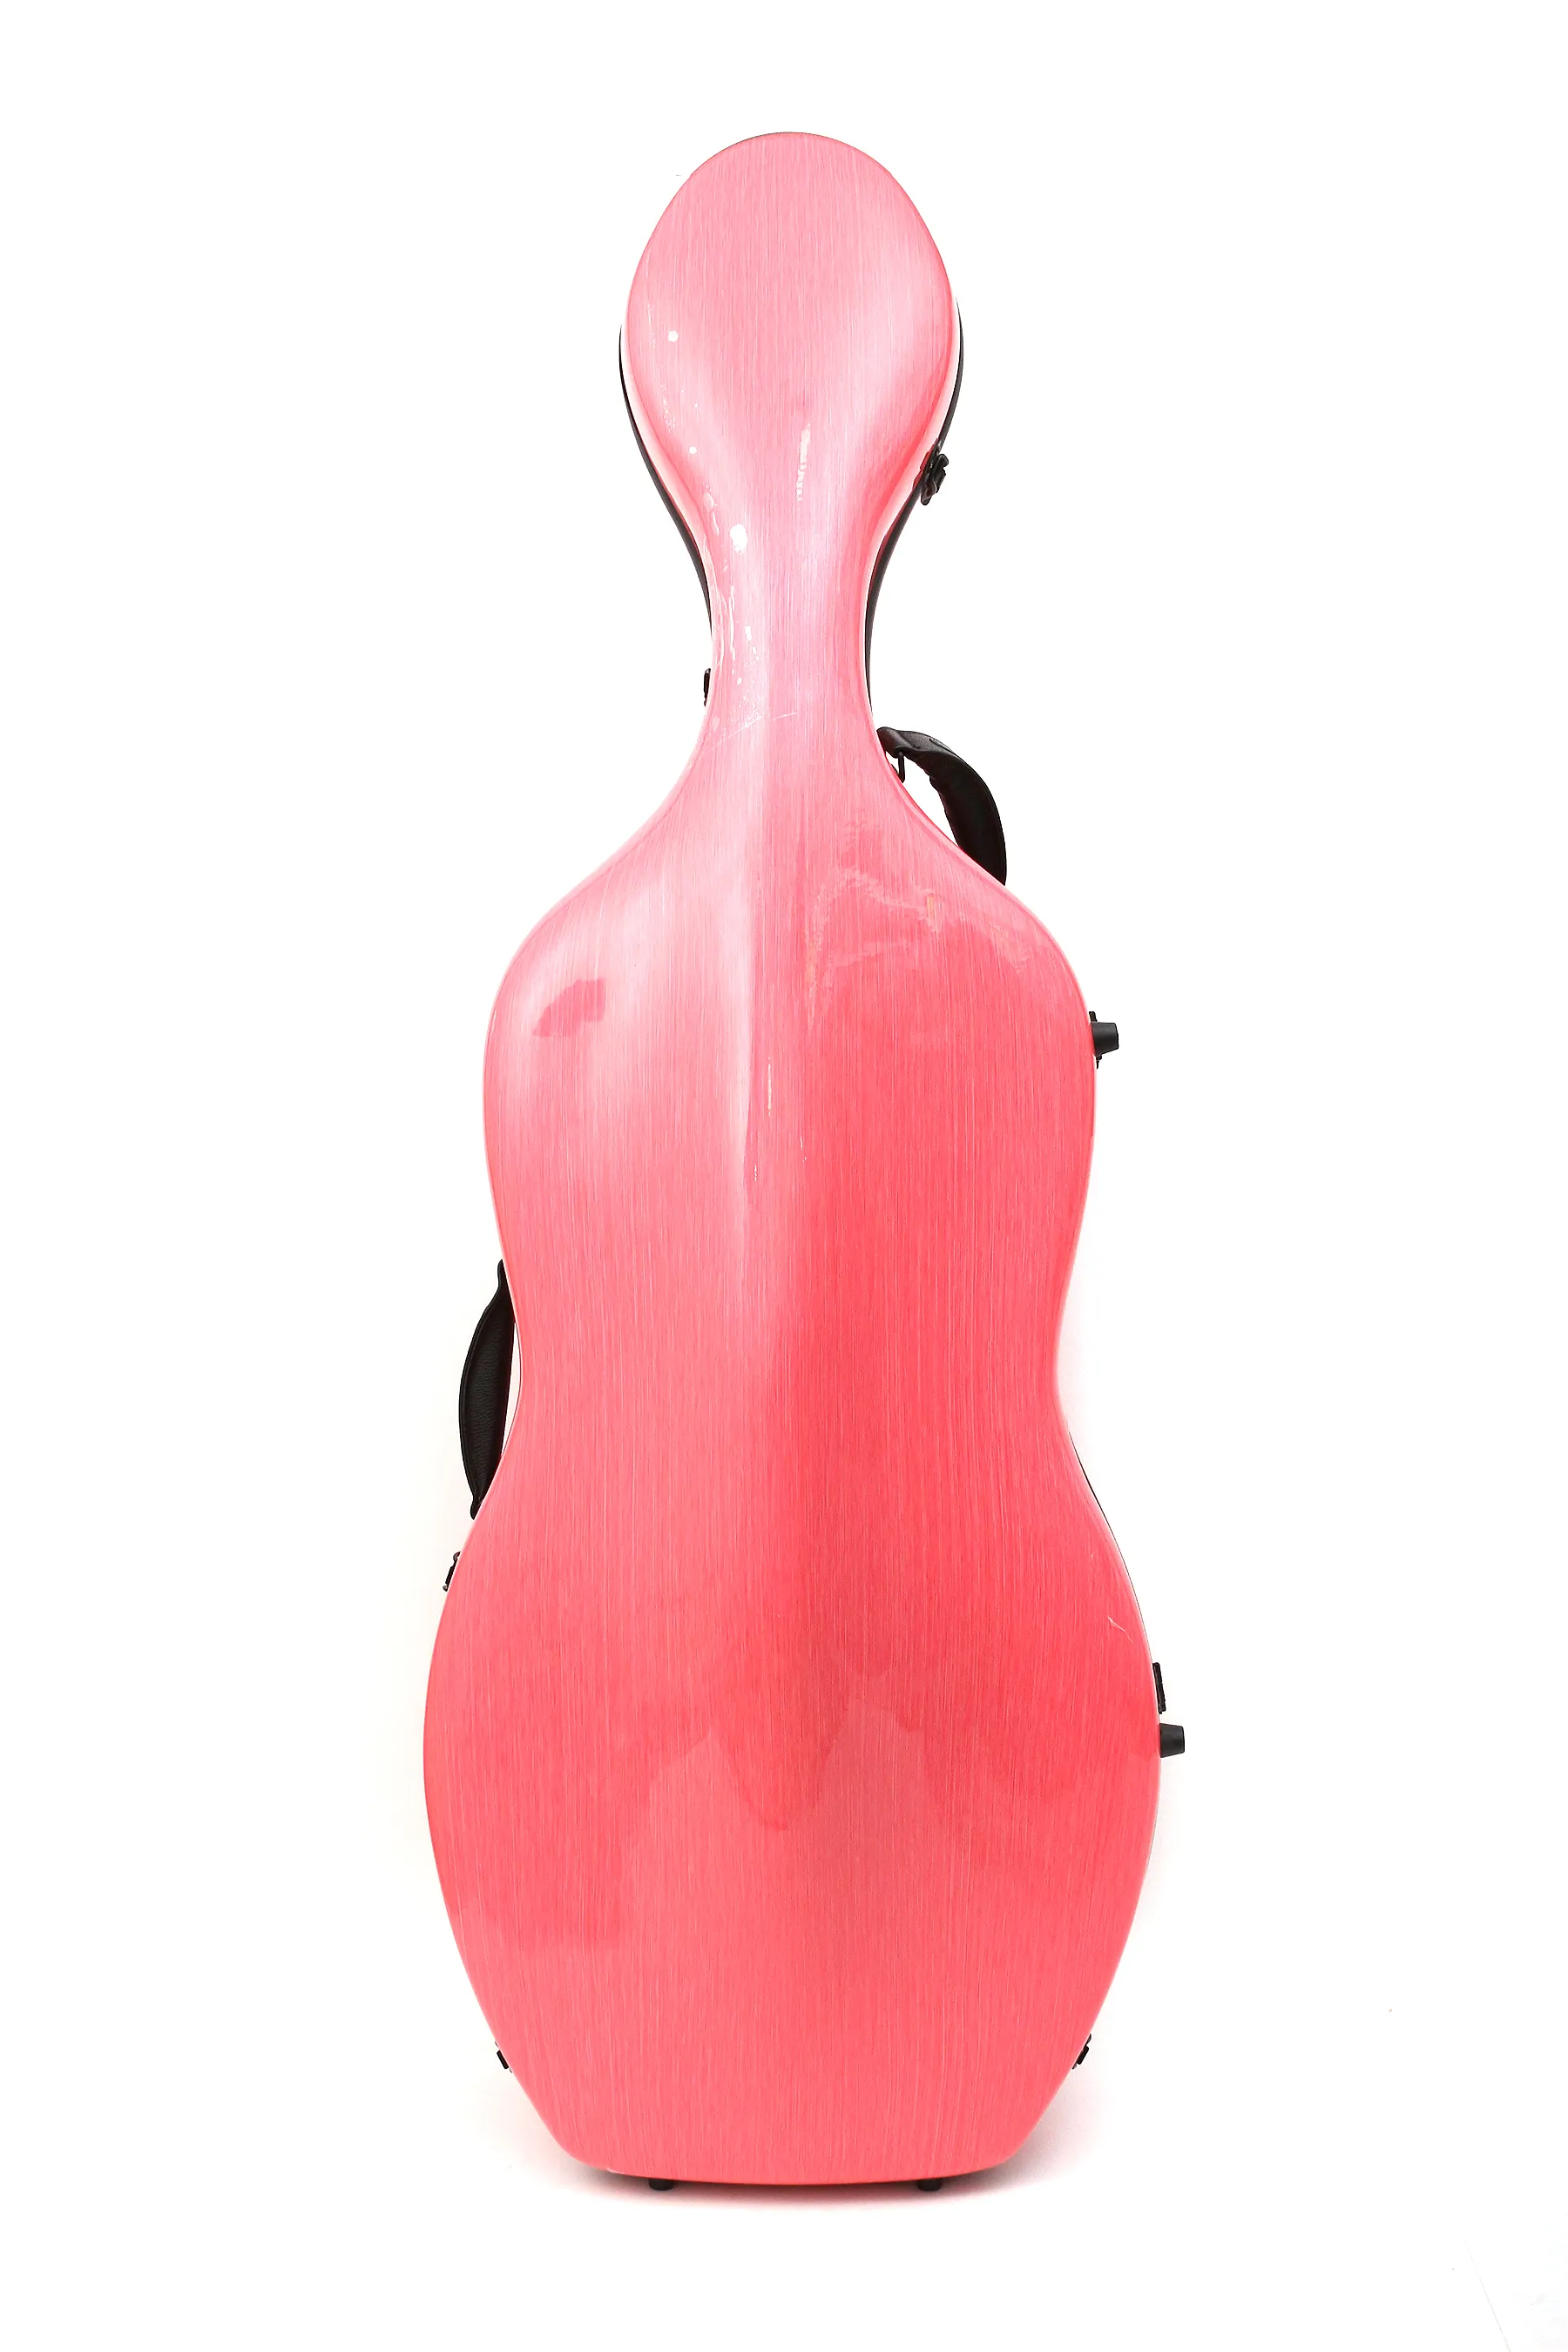 Yinfente 4/4 étui violoncelle en fibre de carbone boîte violoncelle forte couleur rose clair 4,2 kg avec roues transporter violoncelle